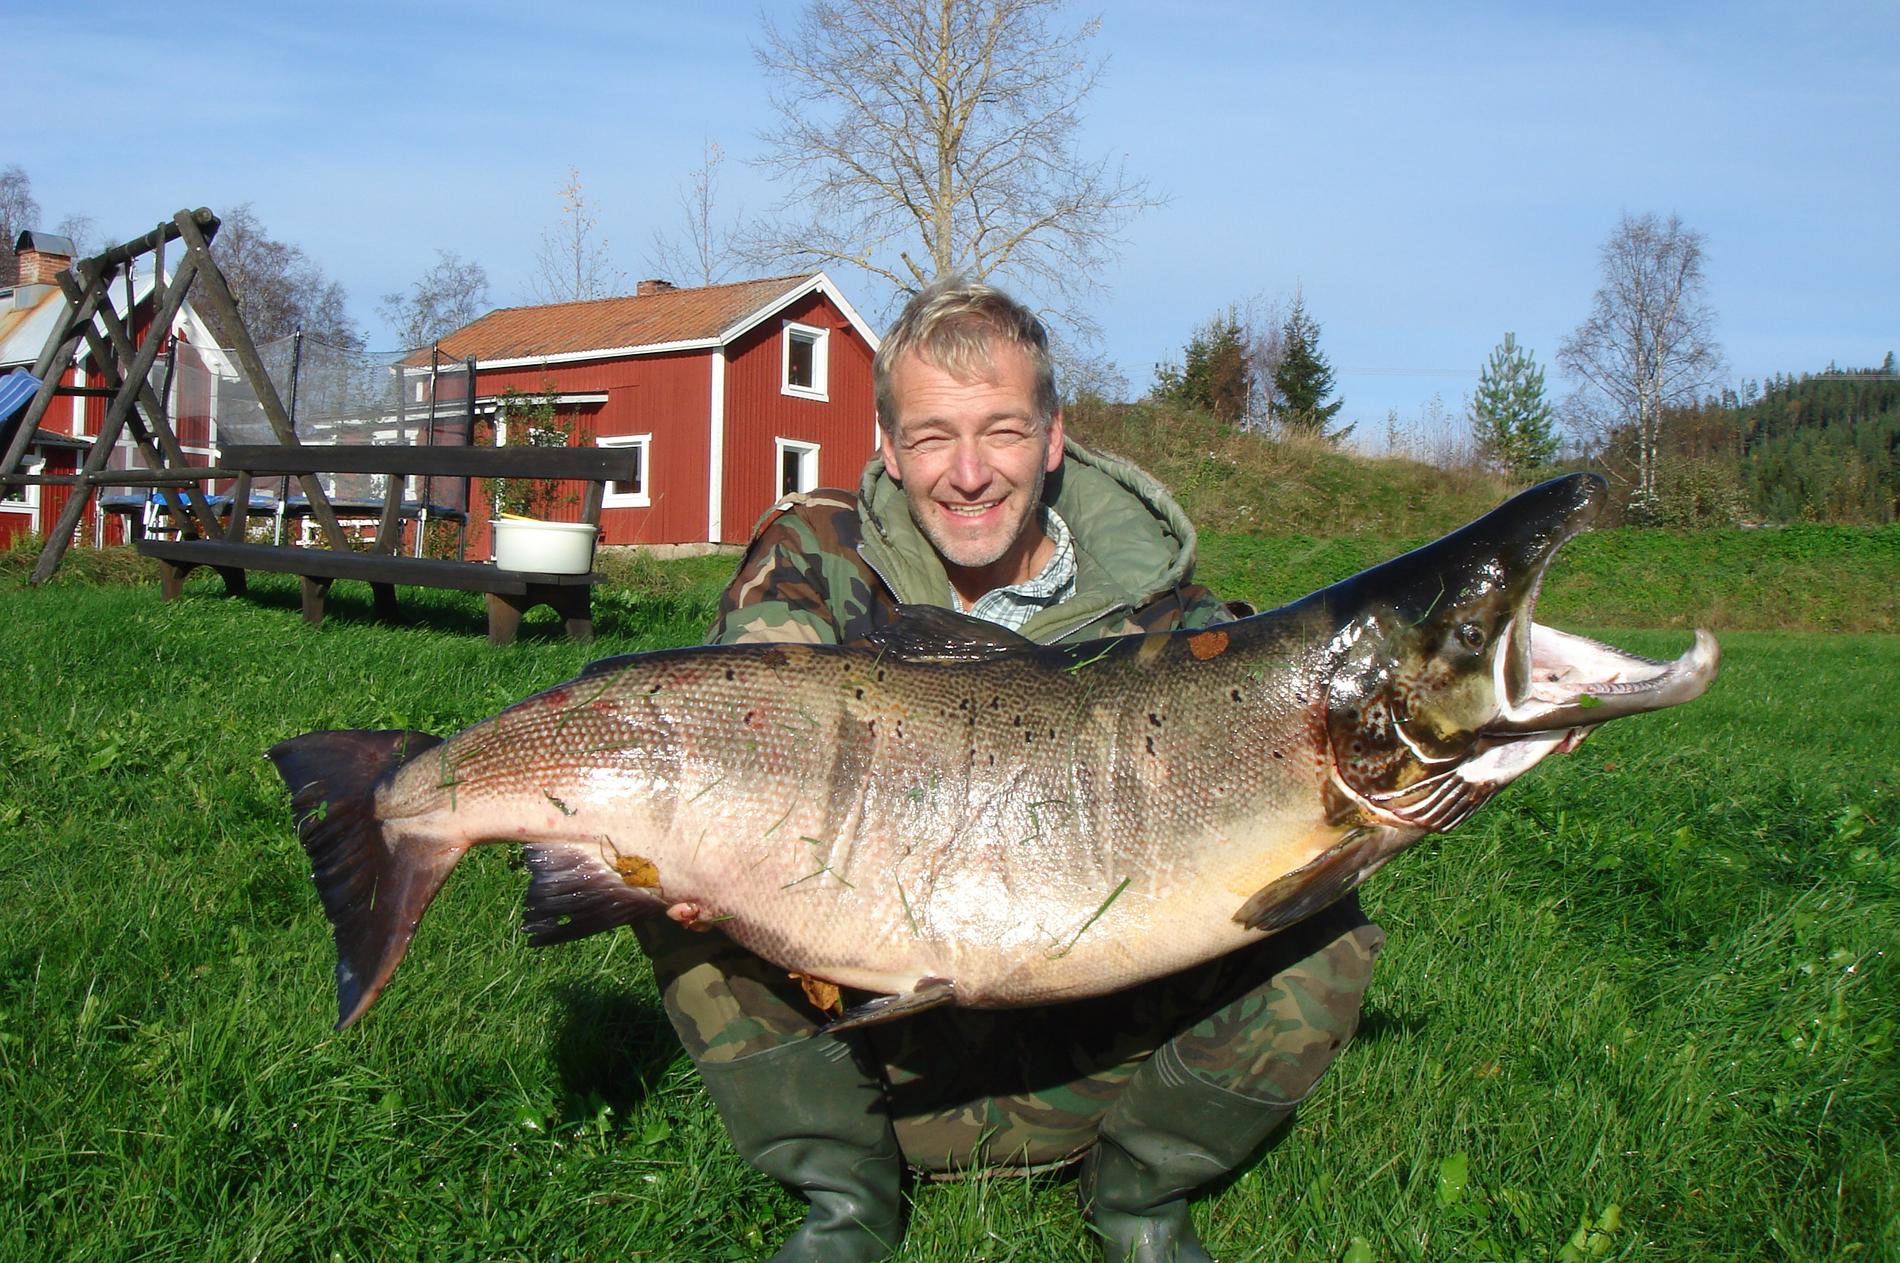 Rekordlax Uwe Lehrer från Medelpad fick 29 kilo lax på kroken.